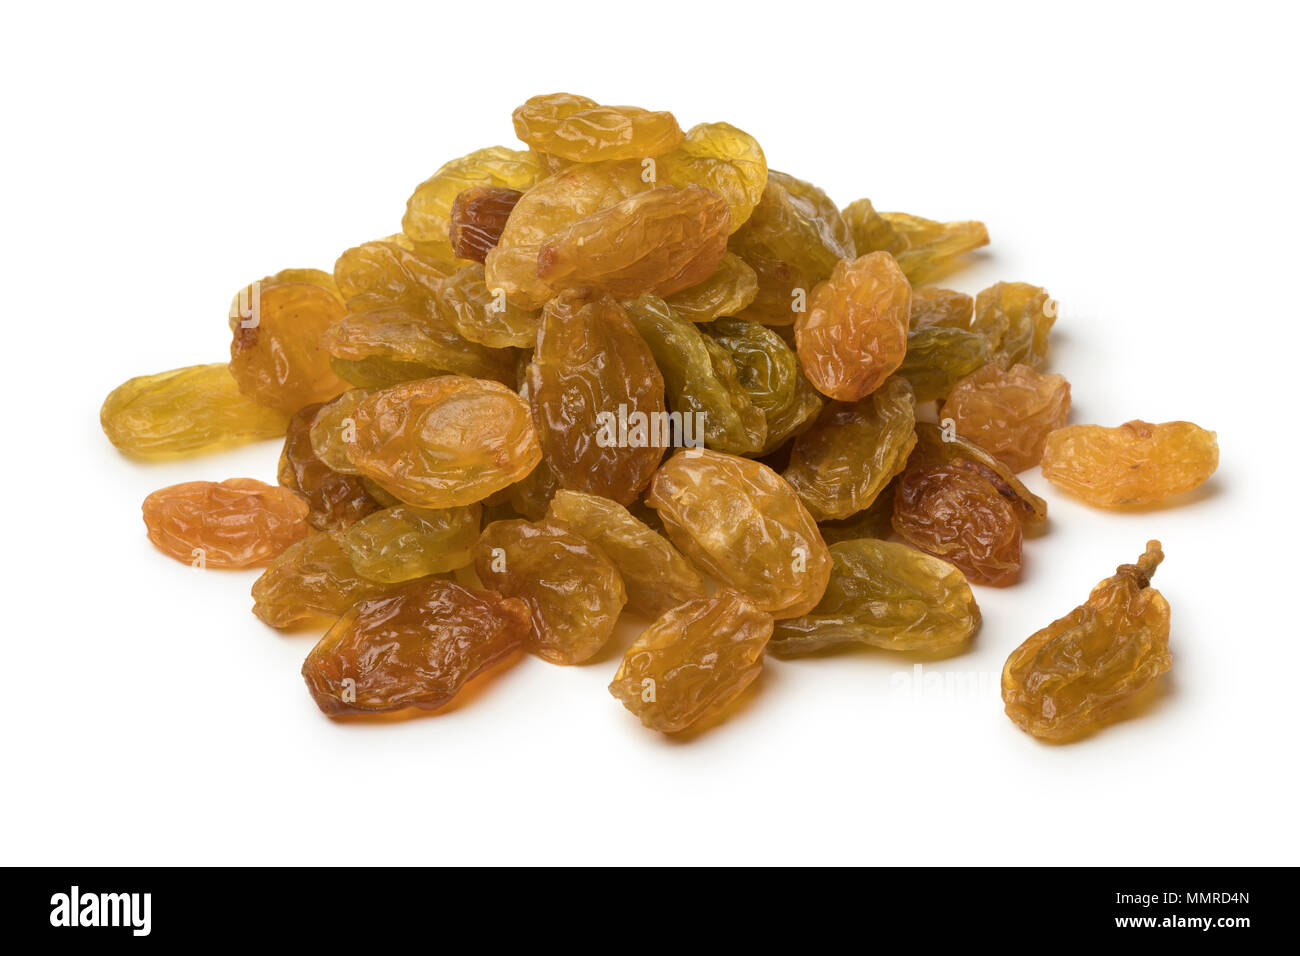 Heap of golden yellow jumbo raisins isolated on white background Stock Photo